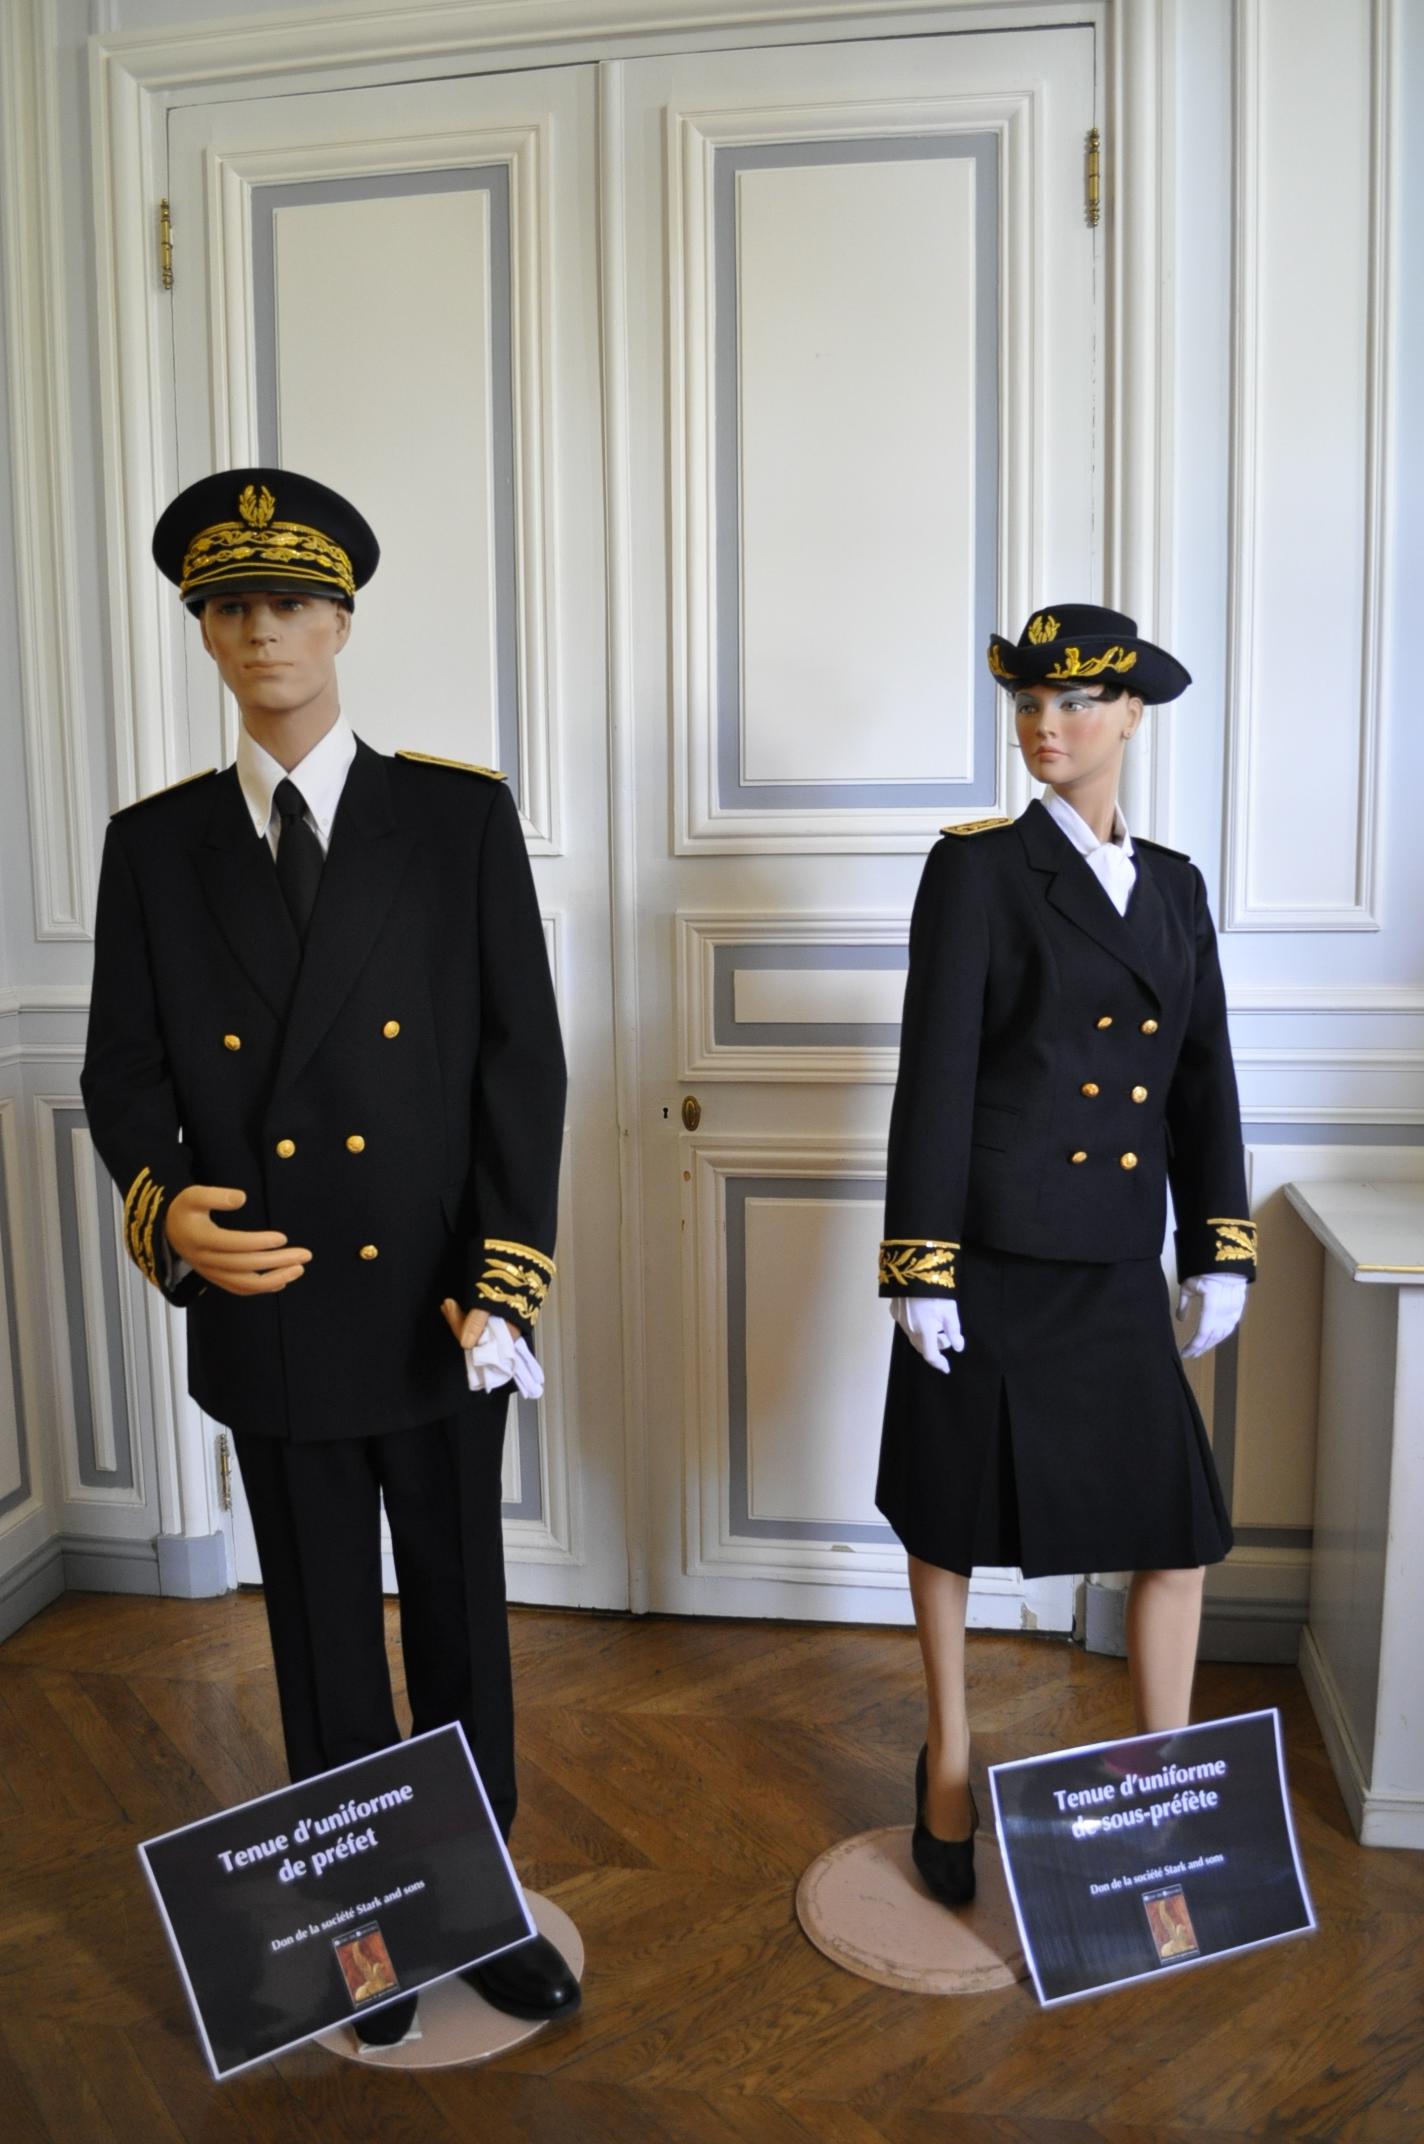 Tenue d’un uniforme de préfet et de sous-préfète exposition « Les uniformes des préfets au XIXe siècle et aujourd'hui »